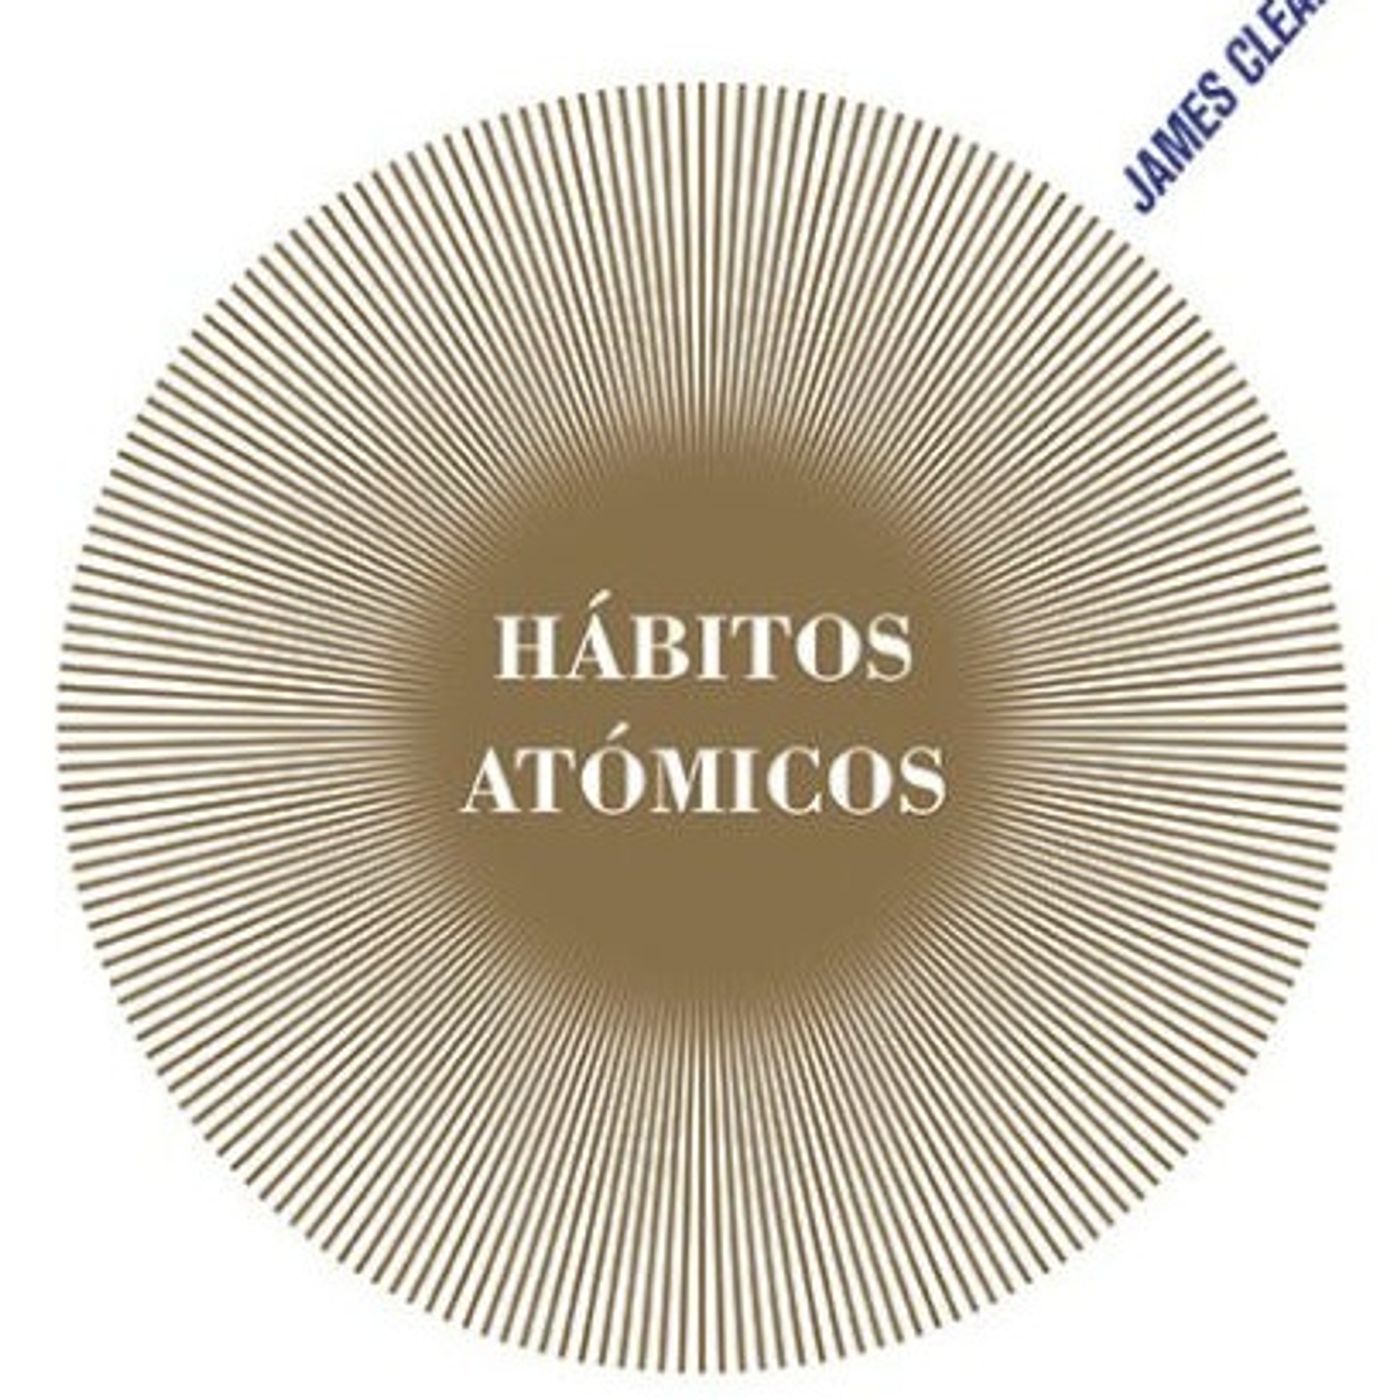 HABITOS ATOMICOS CAPITULO 2 AUDIOLIBRO